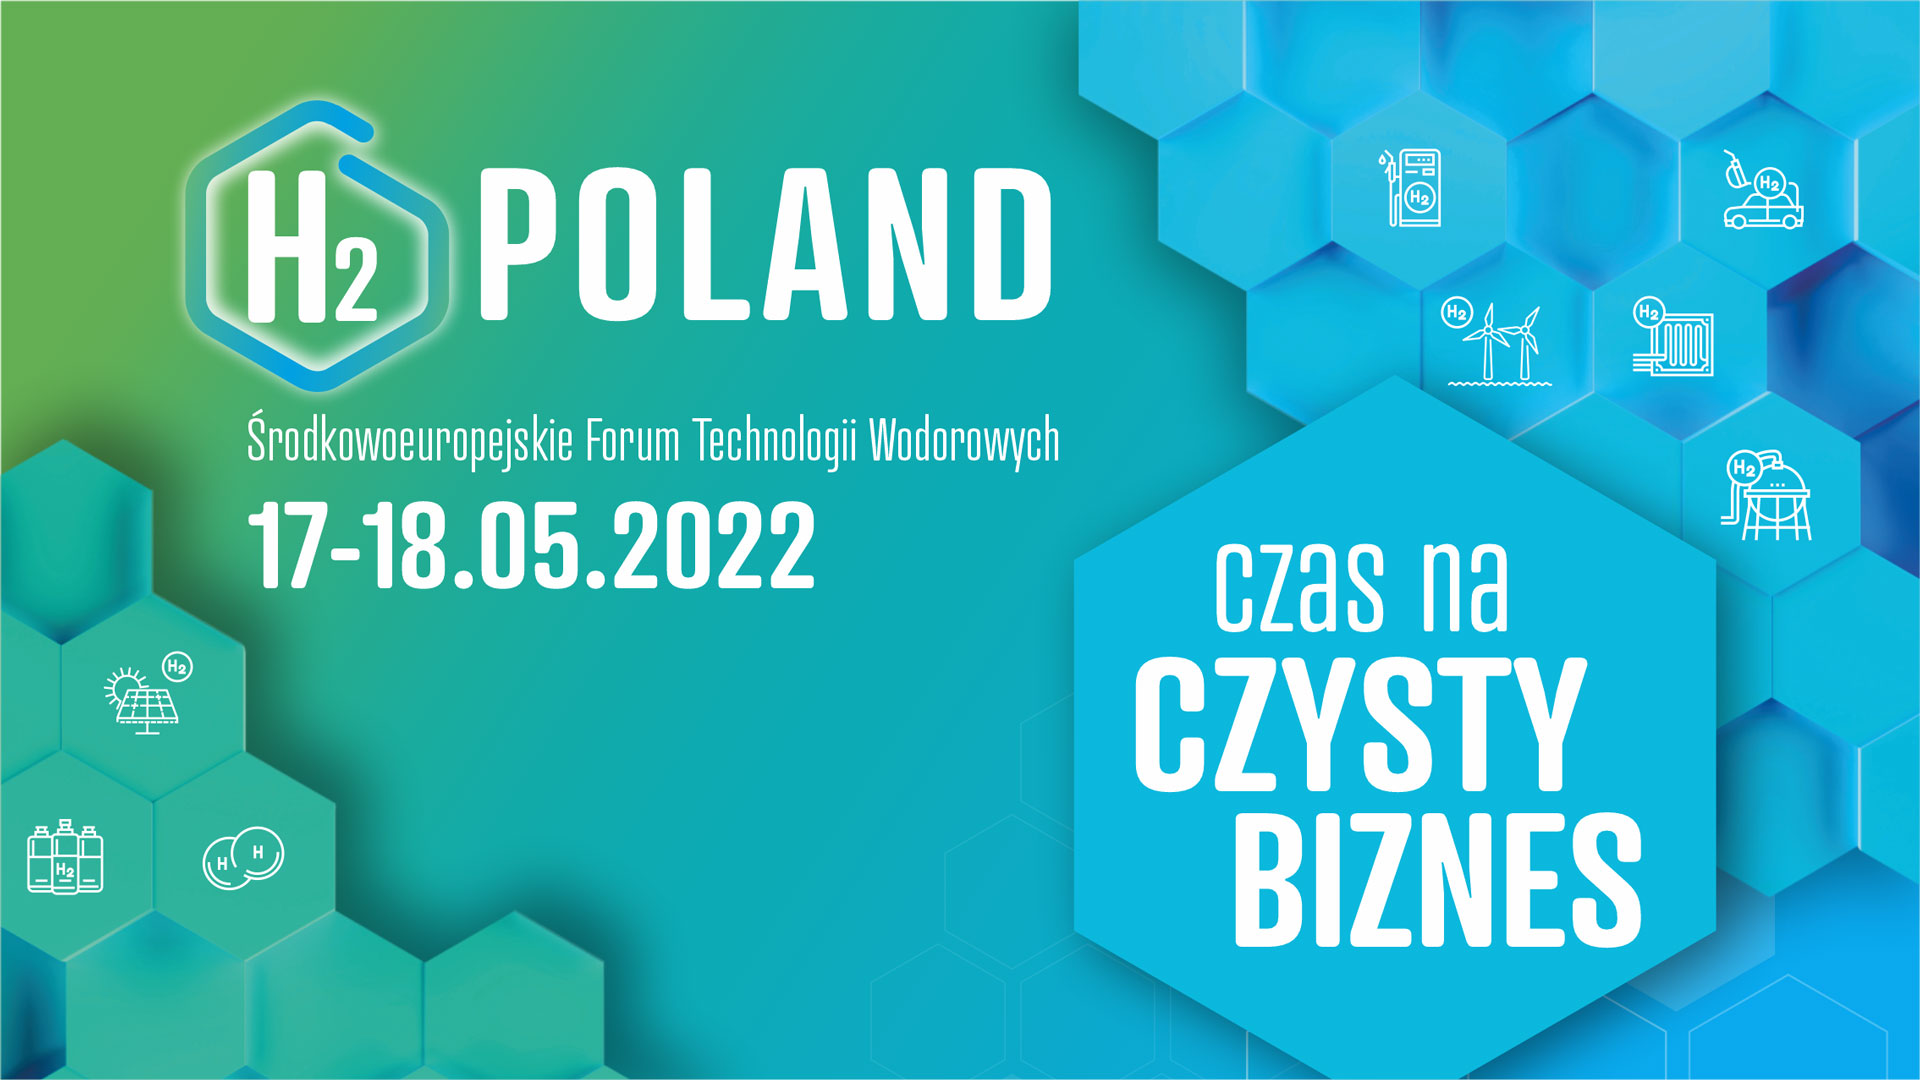 I Środkowoeuropejskie Forum Technologii Wodorowych H2Poland • ekoetos.pl